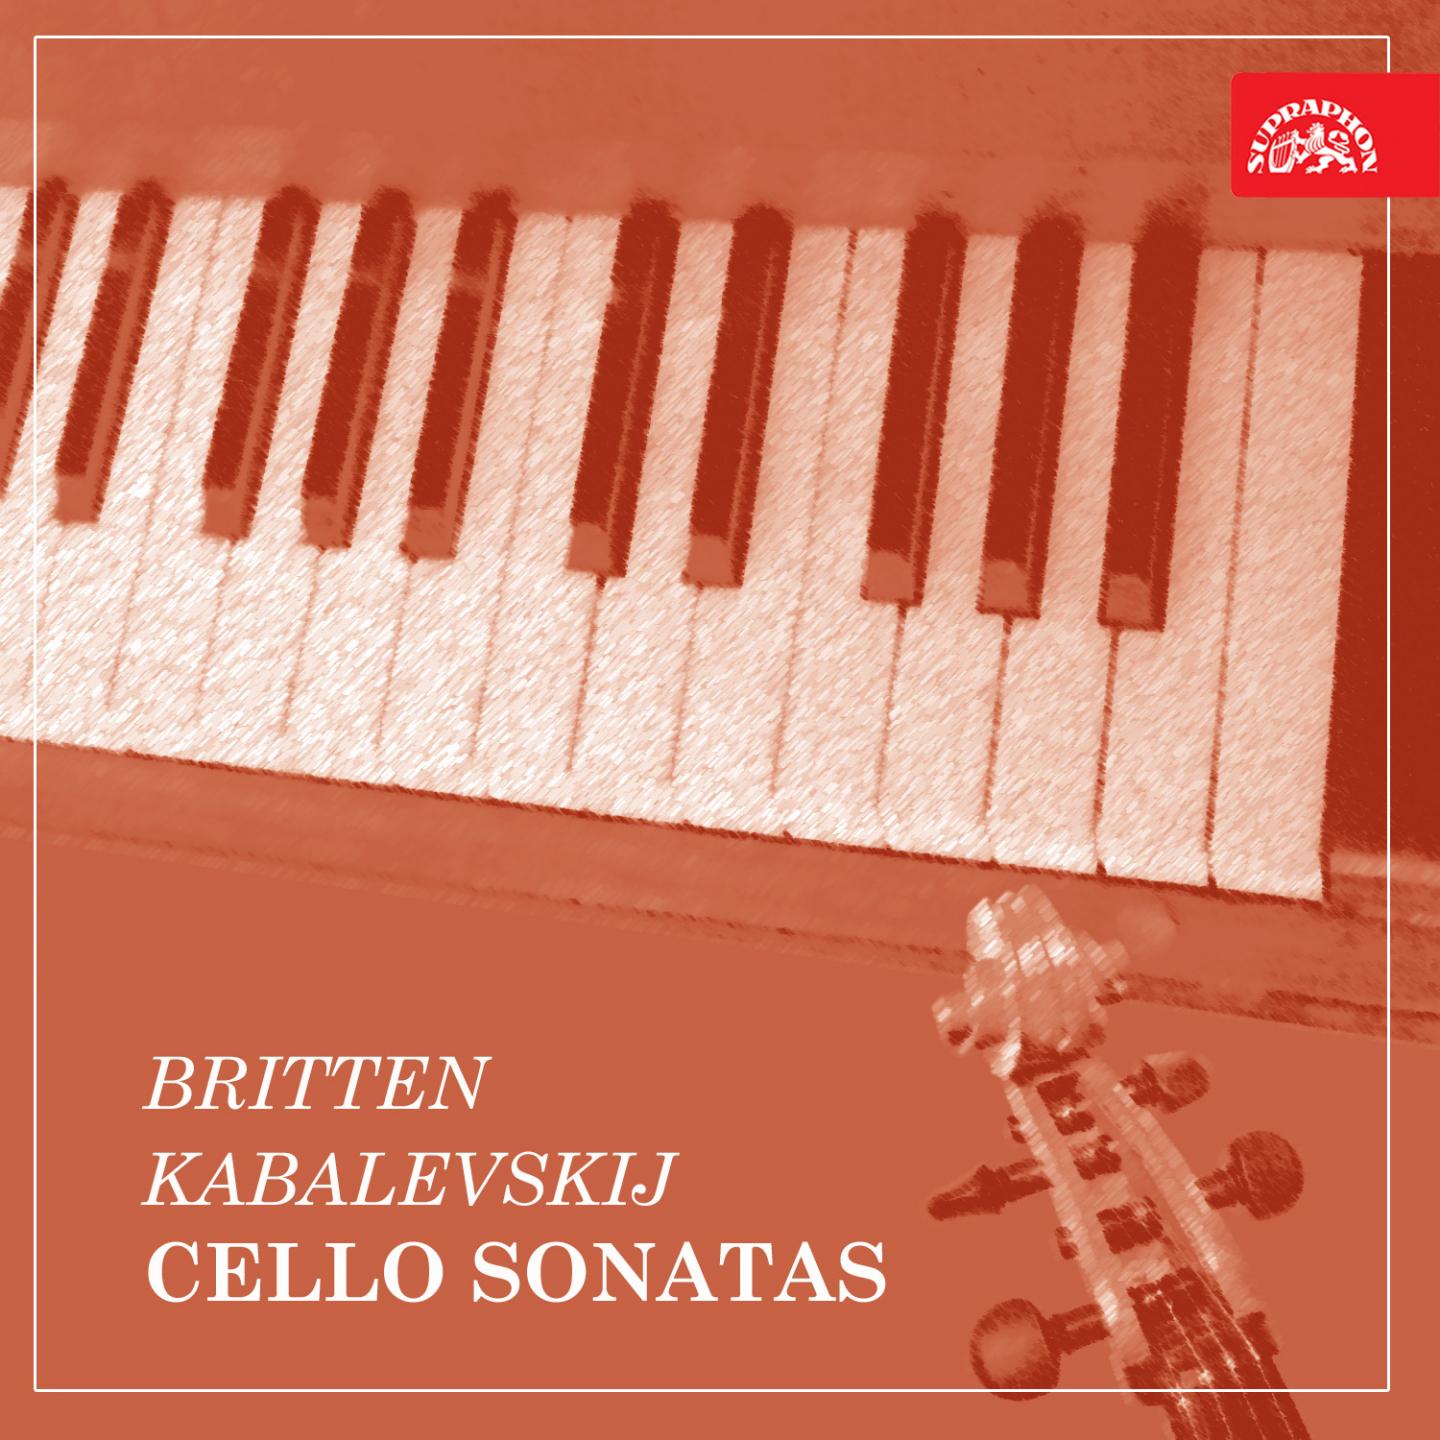 Sonata for Cello and Piano in B-Flat Major, Op. 71, .: III. Allegro molto